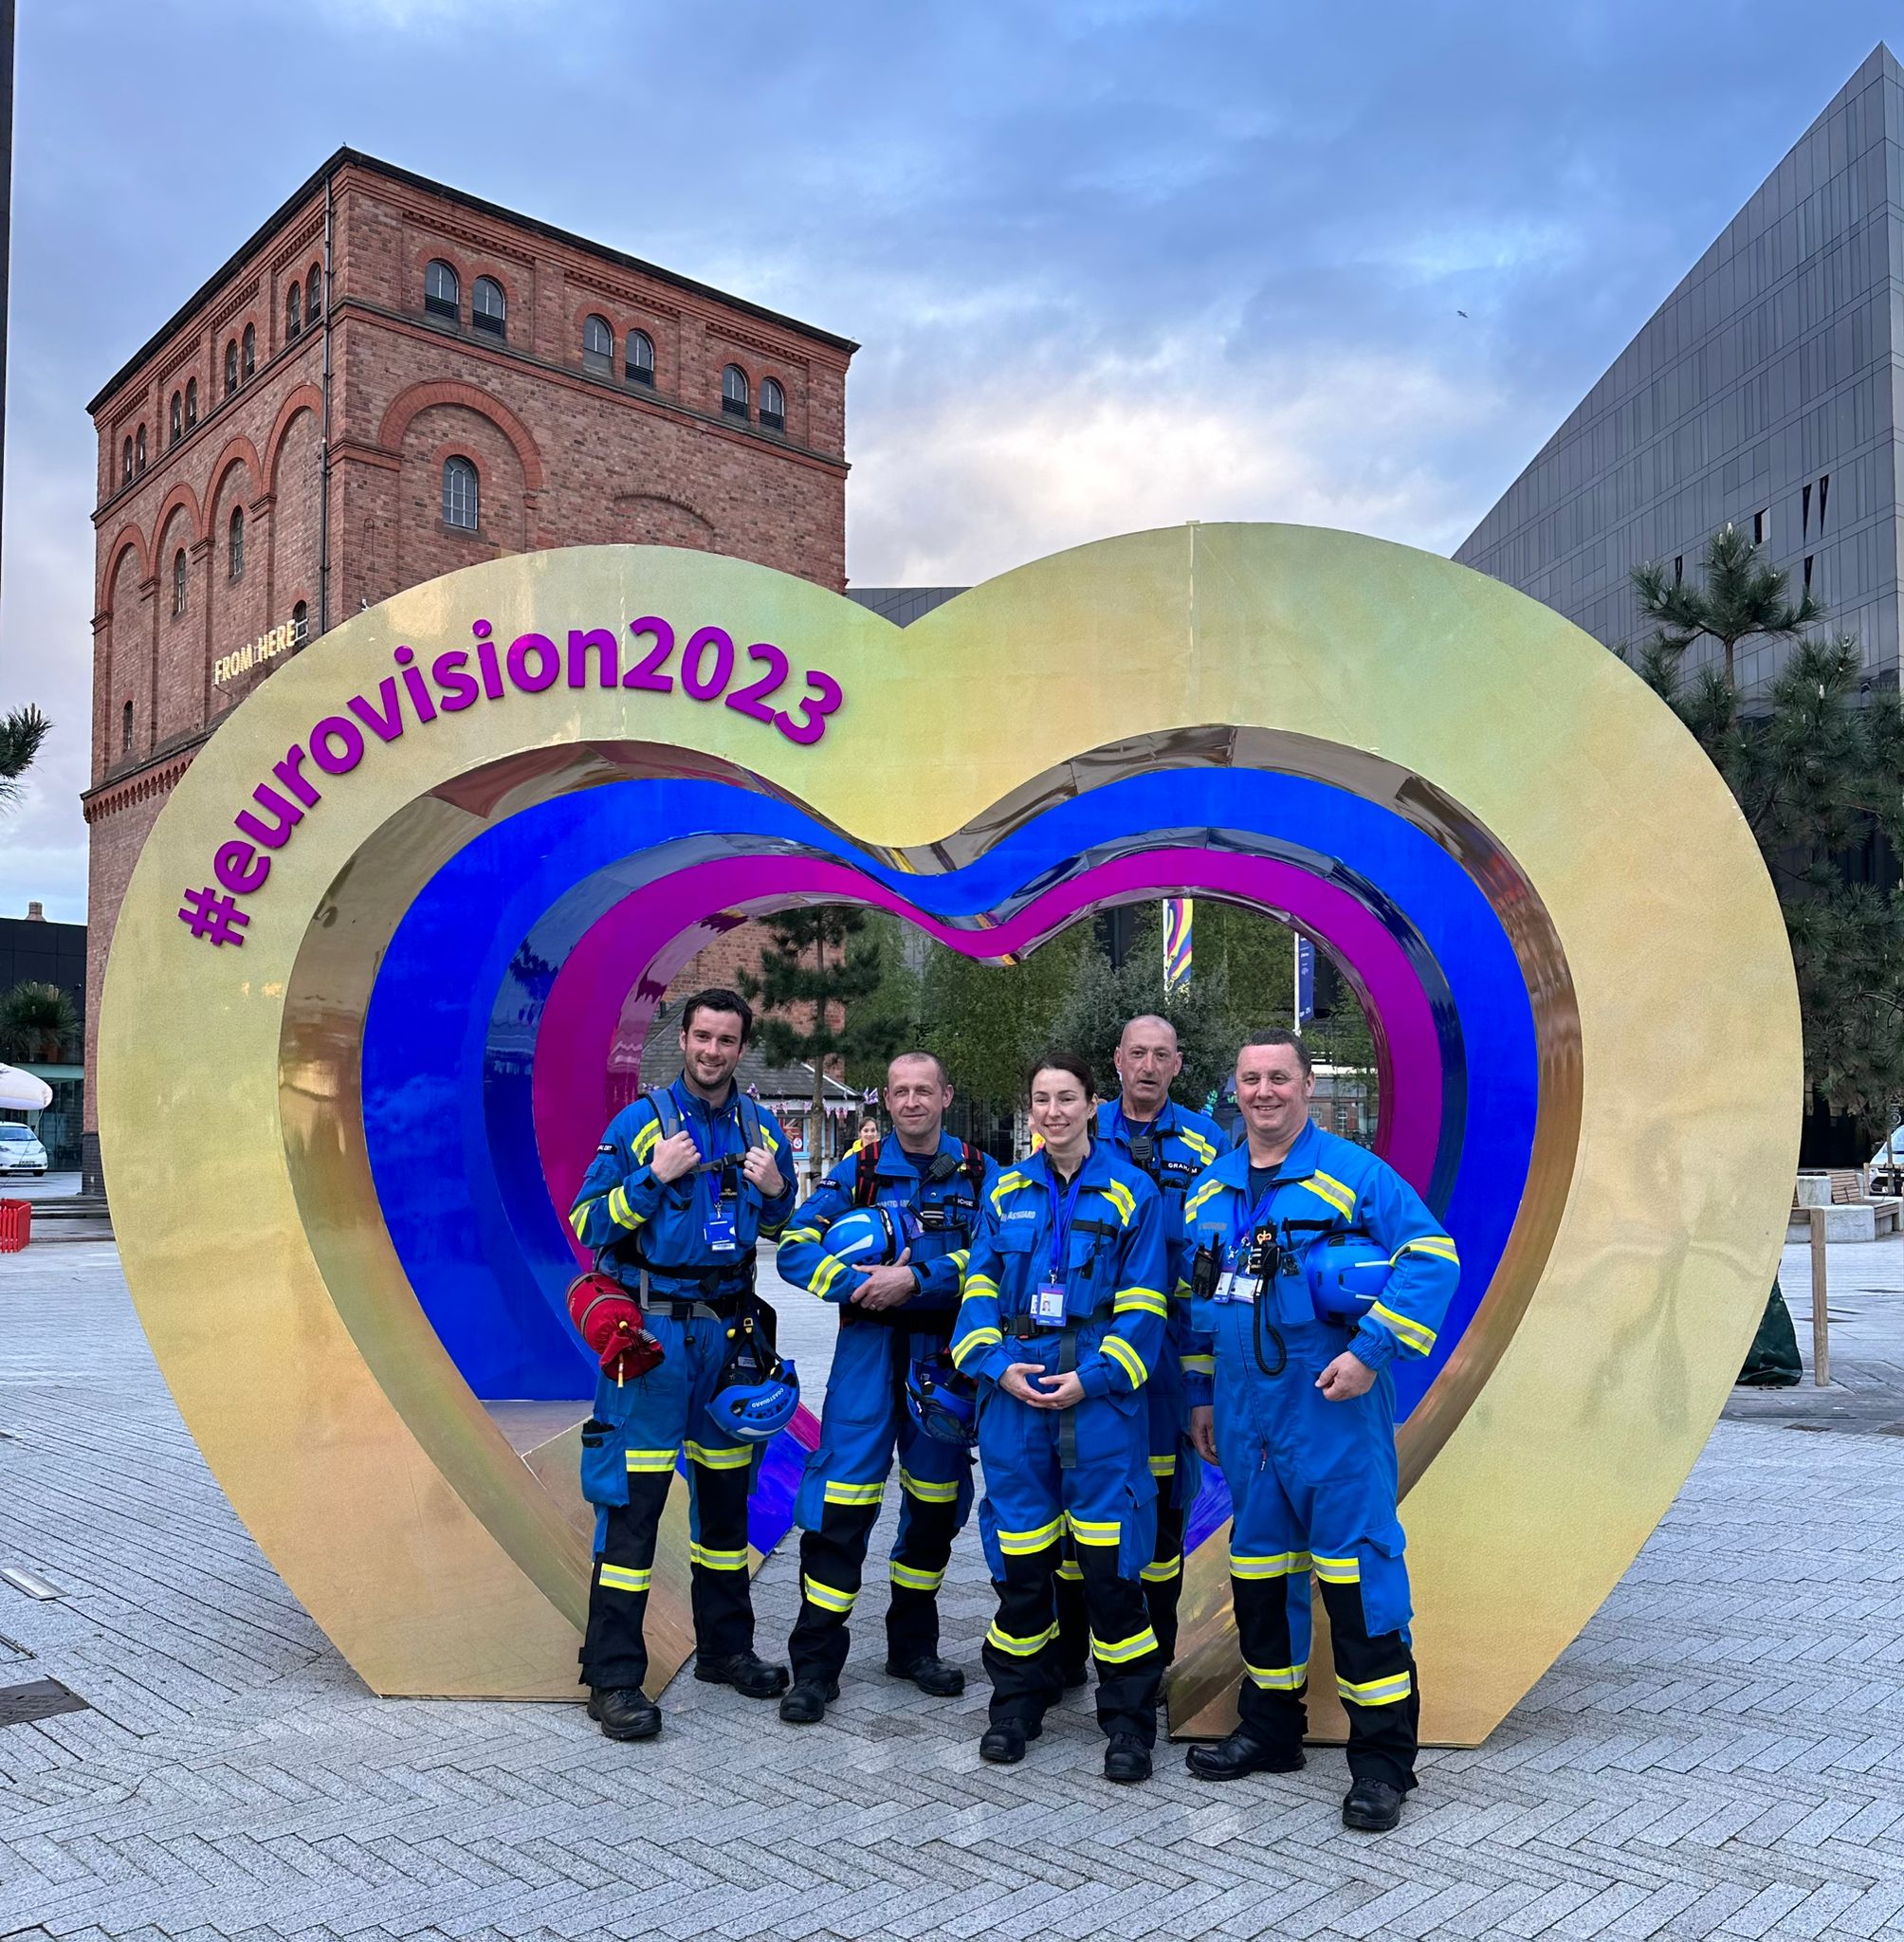 HM Coastguard team in Eurovision photo spot in city centre